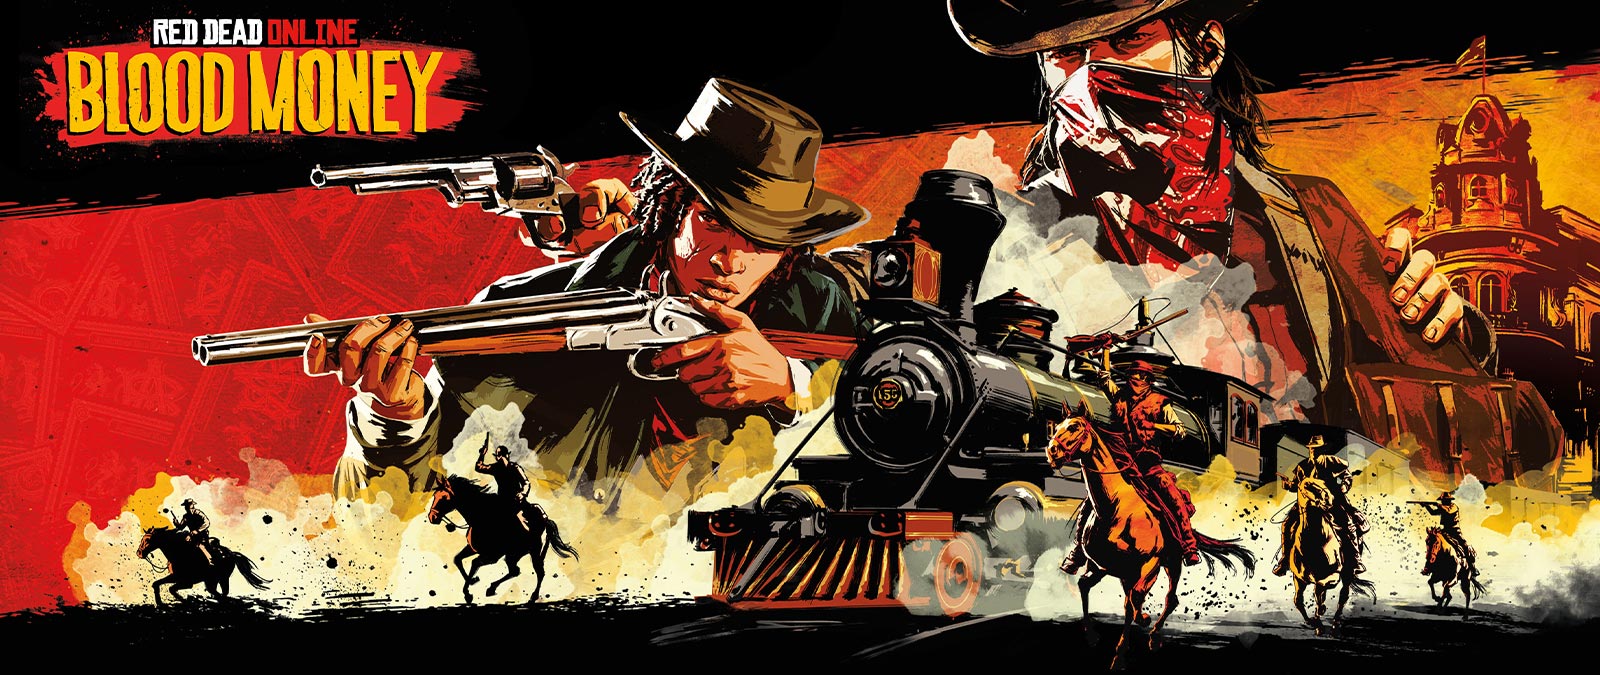 Red Dead Online : Blood Money, des bandits armés à cheval attaquent un train.